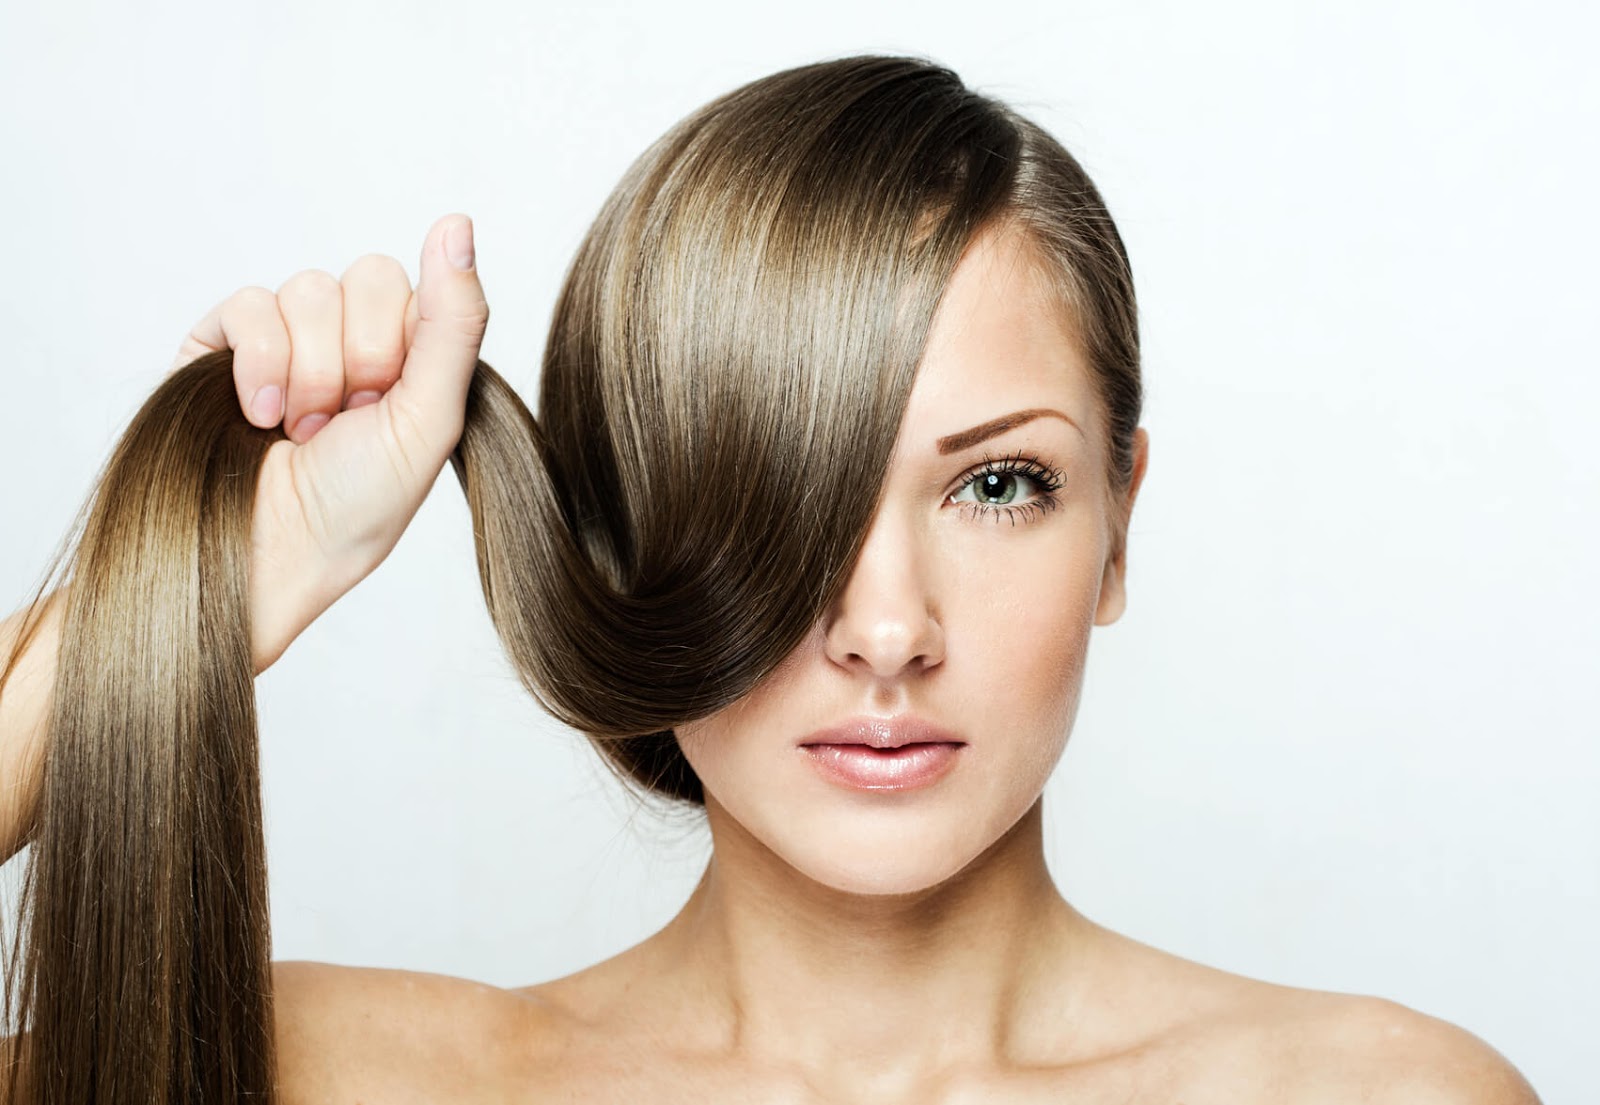 وصفات طبيعية لتقوية الشعر (1)